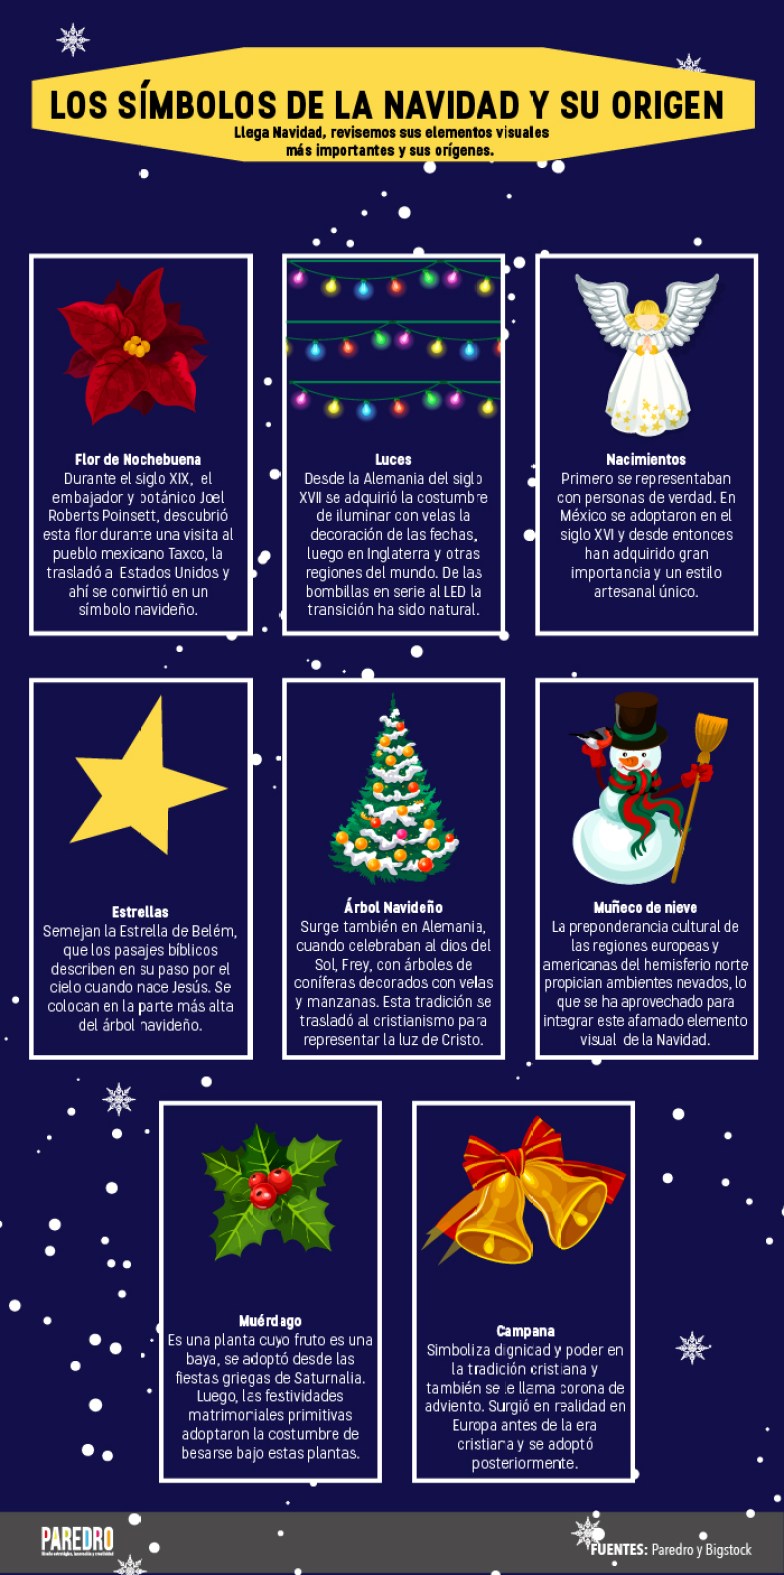 Los símbolos de la Navidad y su origen